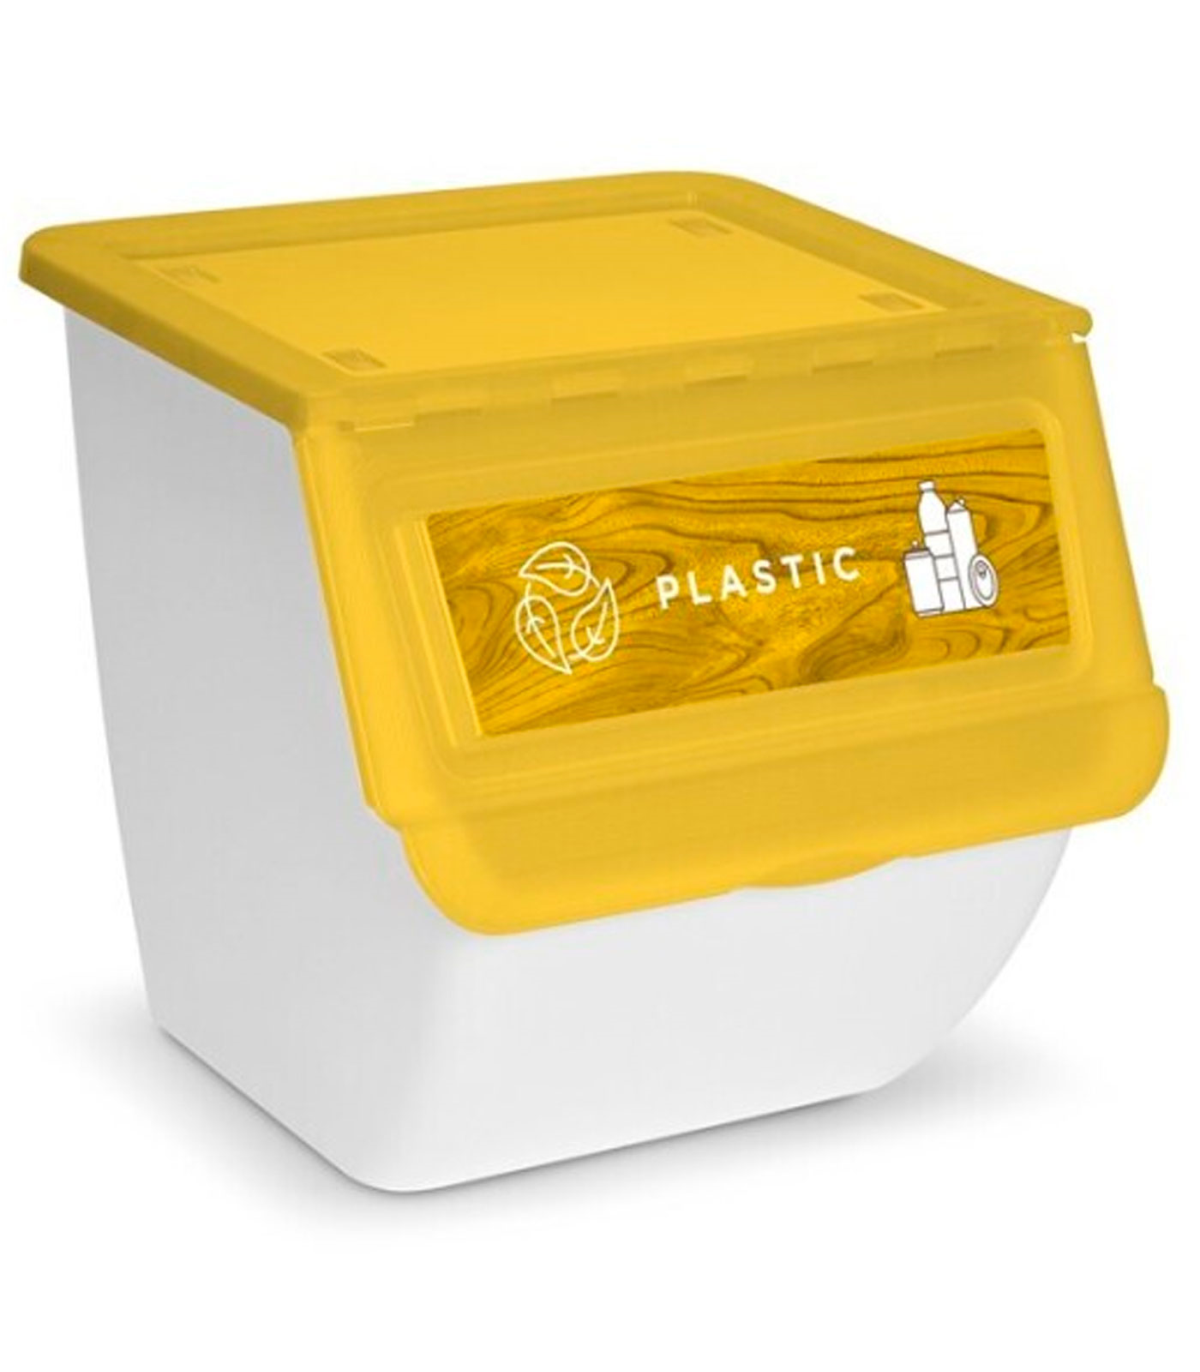 Pack 4 Cajas de Almacenaje con tapa de plástico